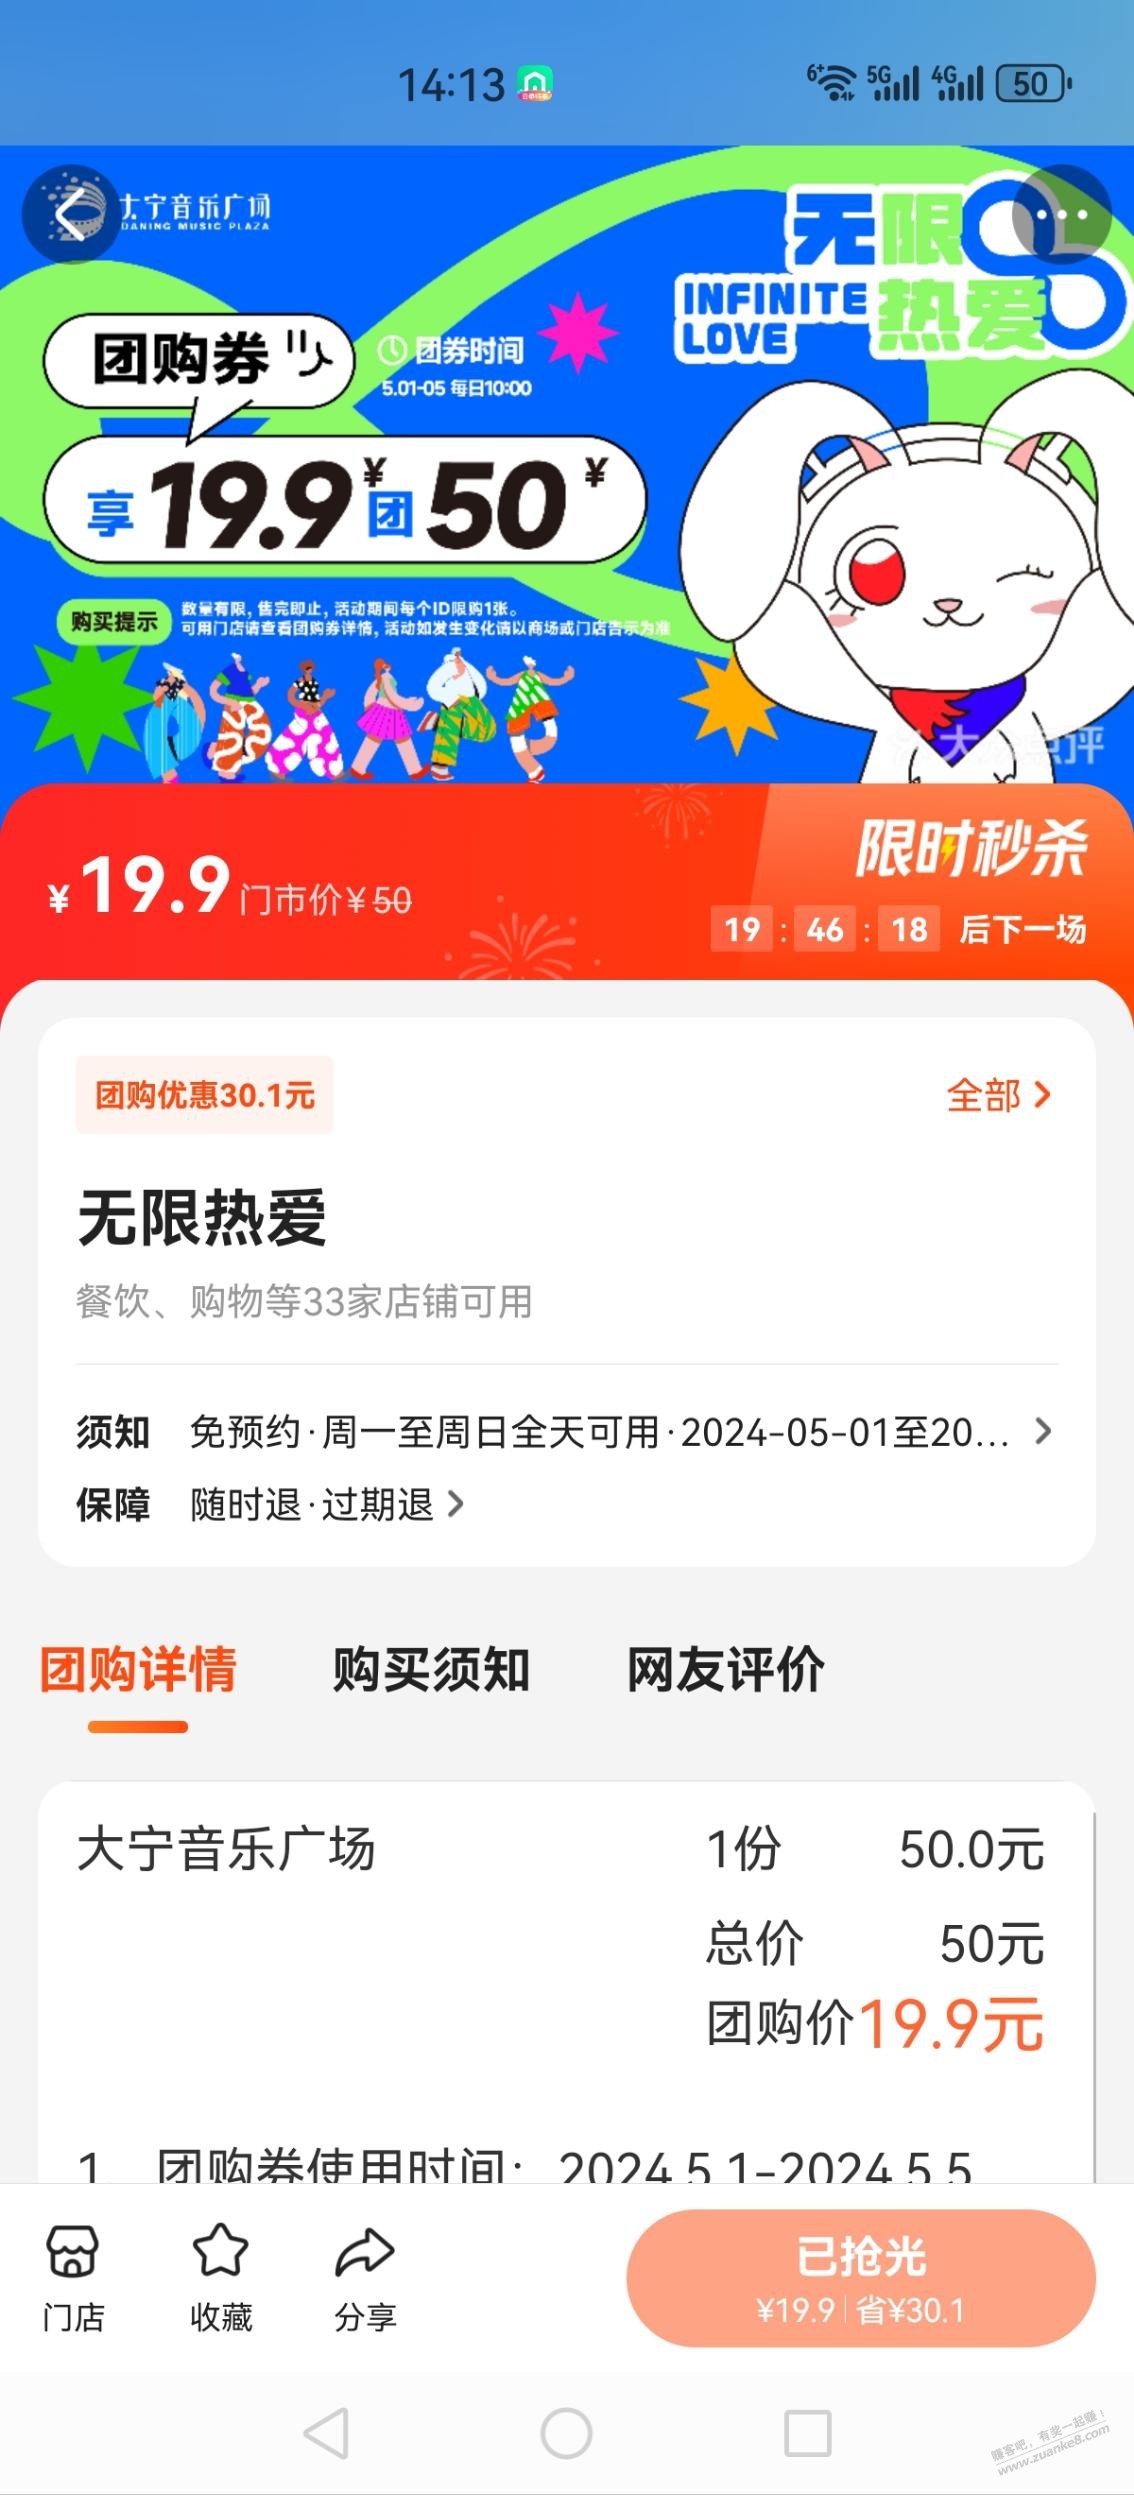 上海五五购物节大宁音乐广场19.9抵50元券-惠小助(52huixz.com)